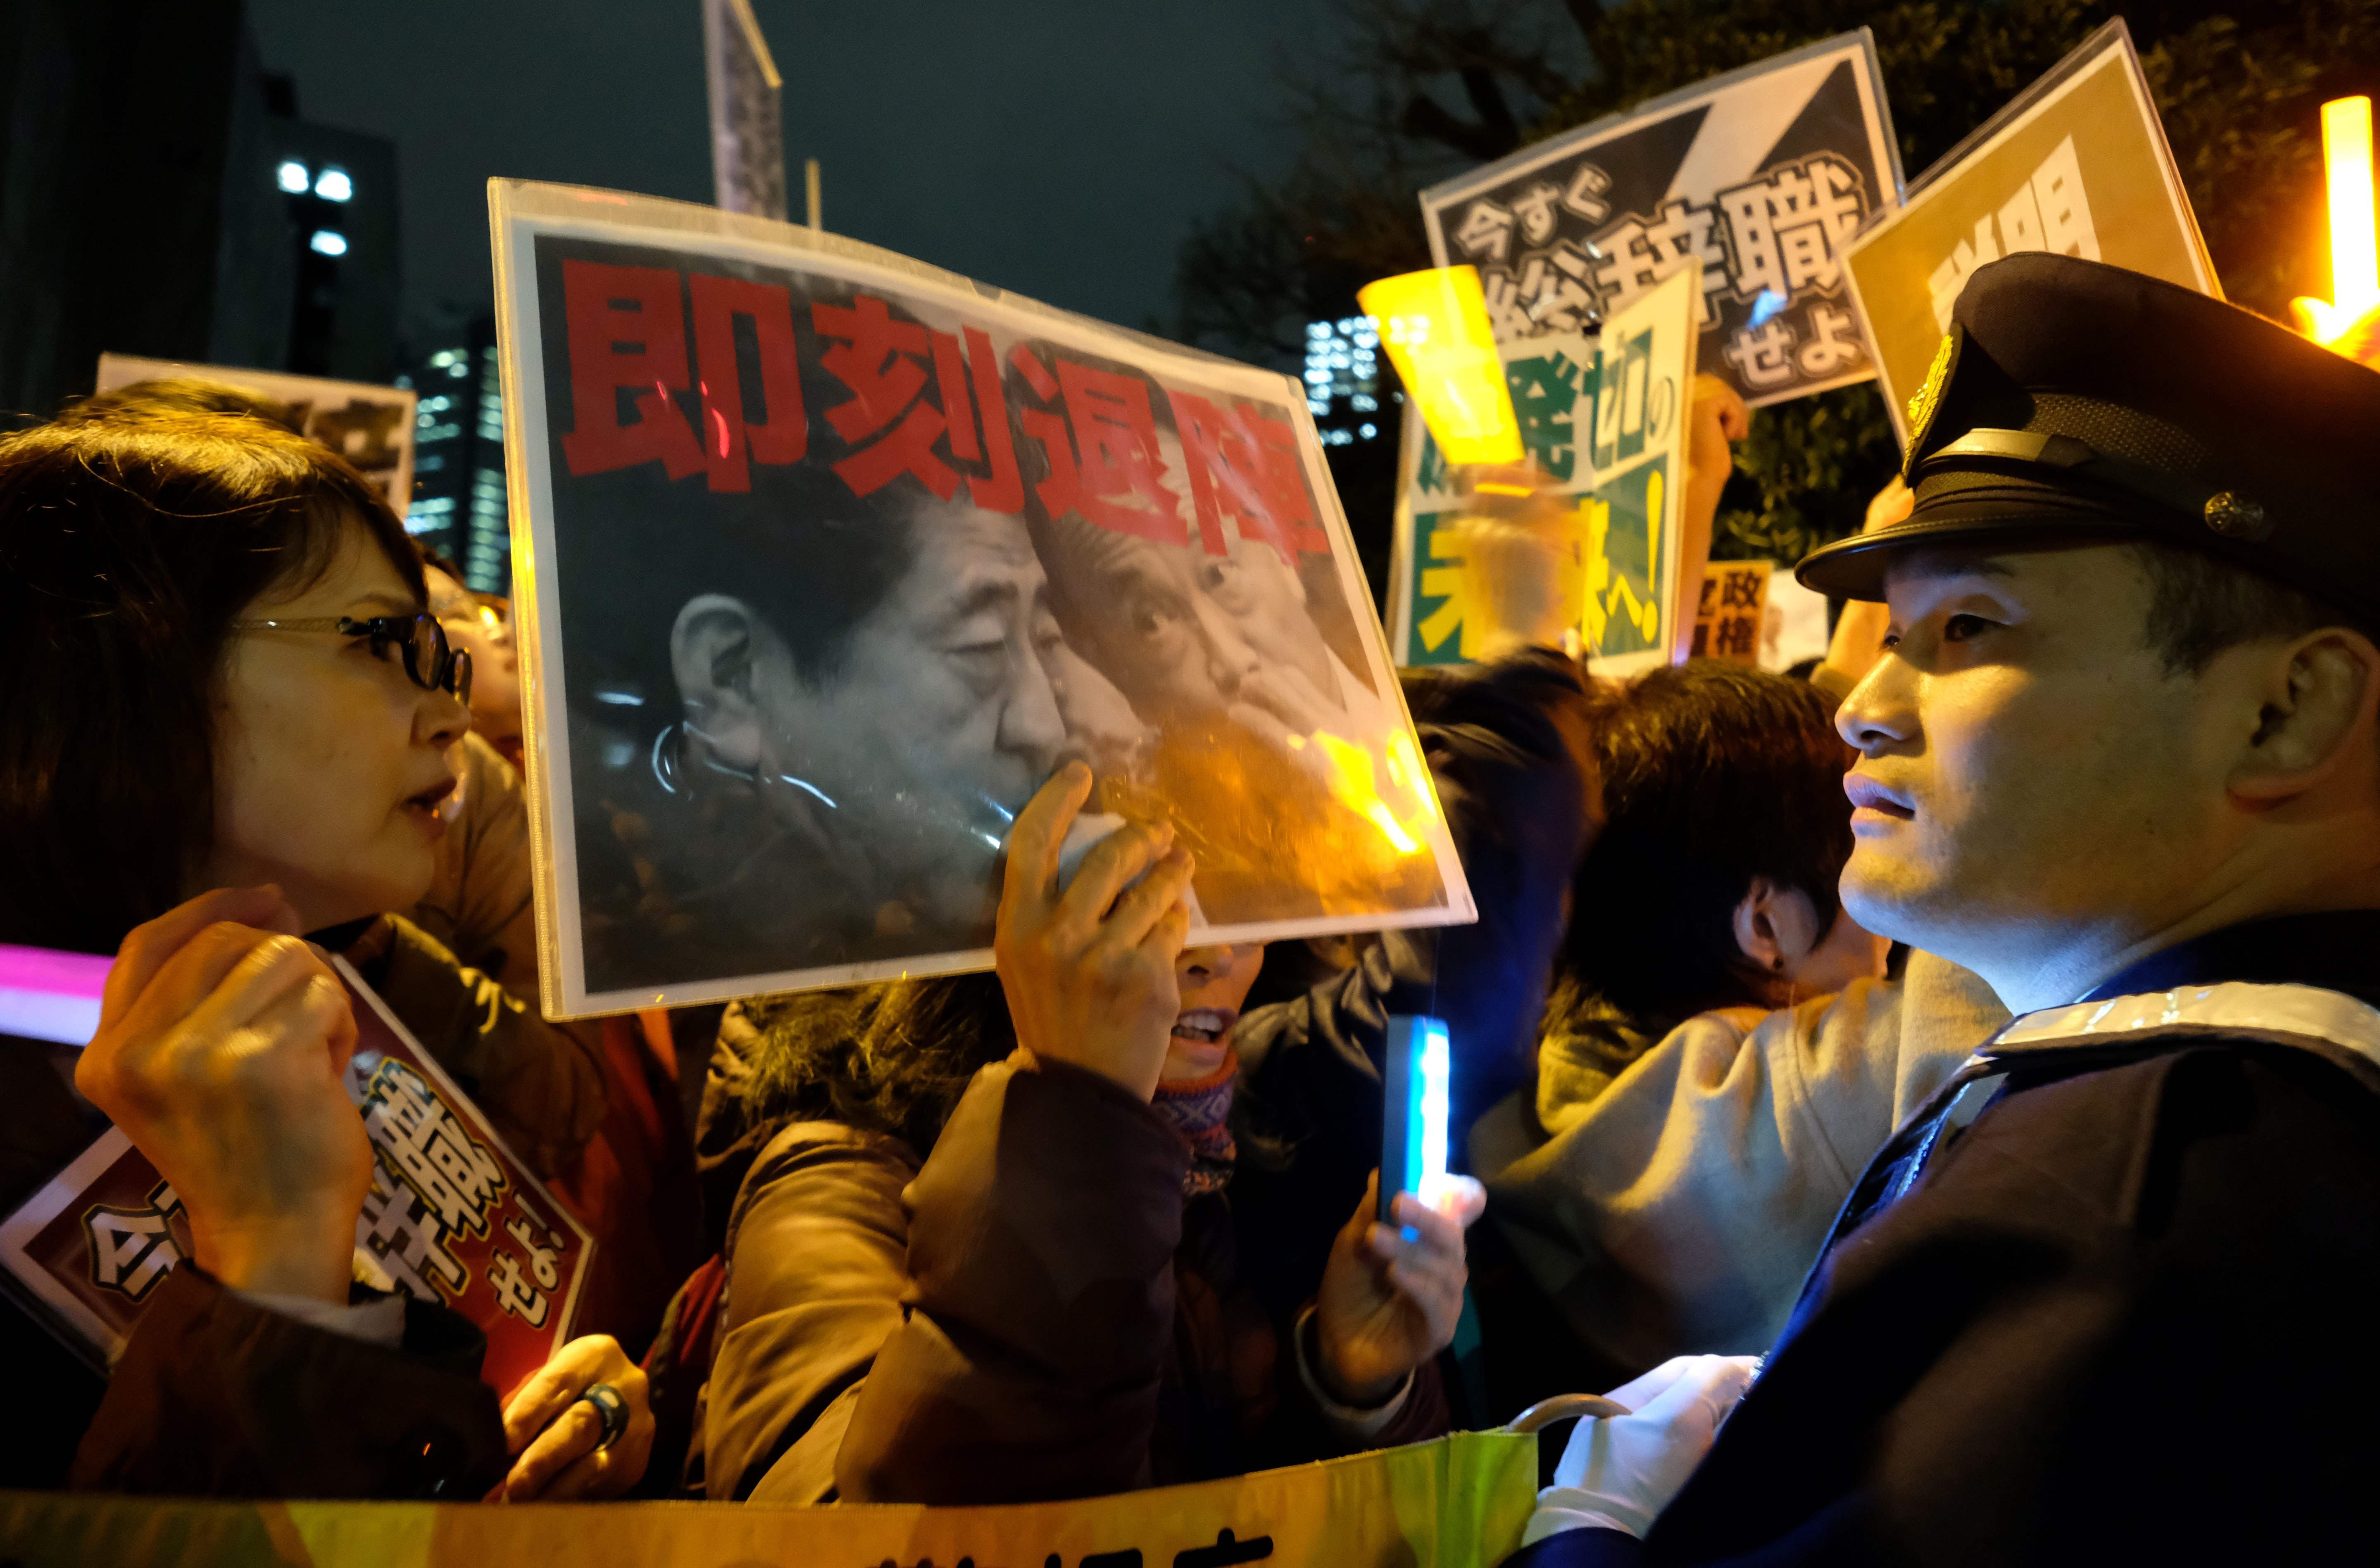 احتجاجات ضد رئيس الوزراء اليابانى